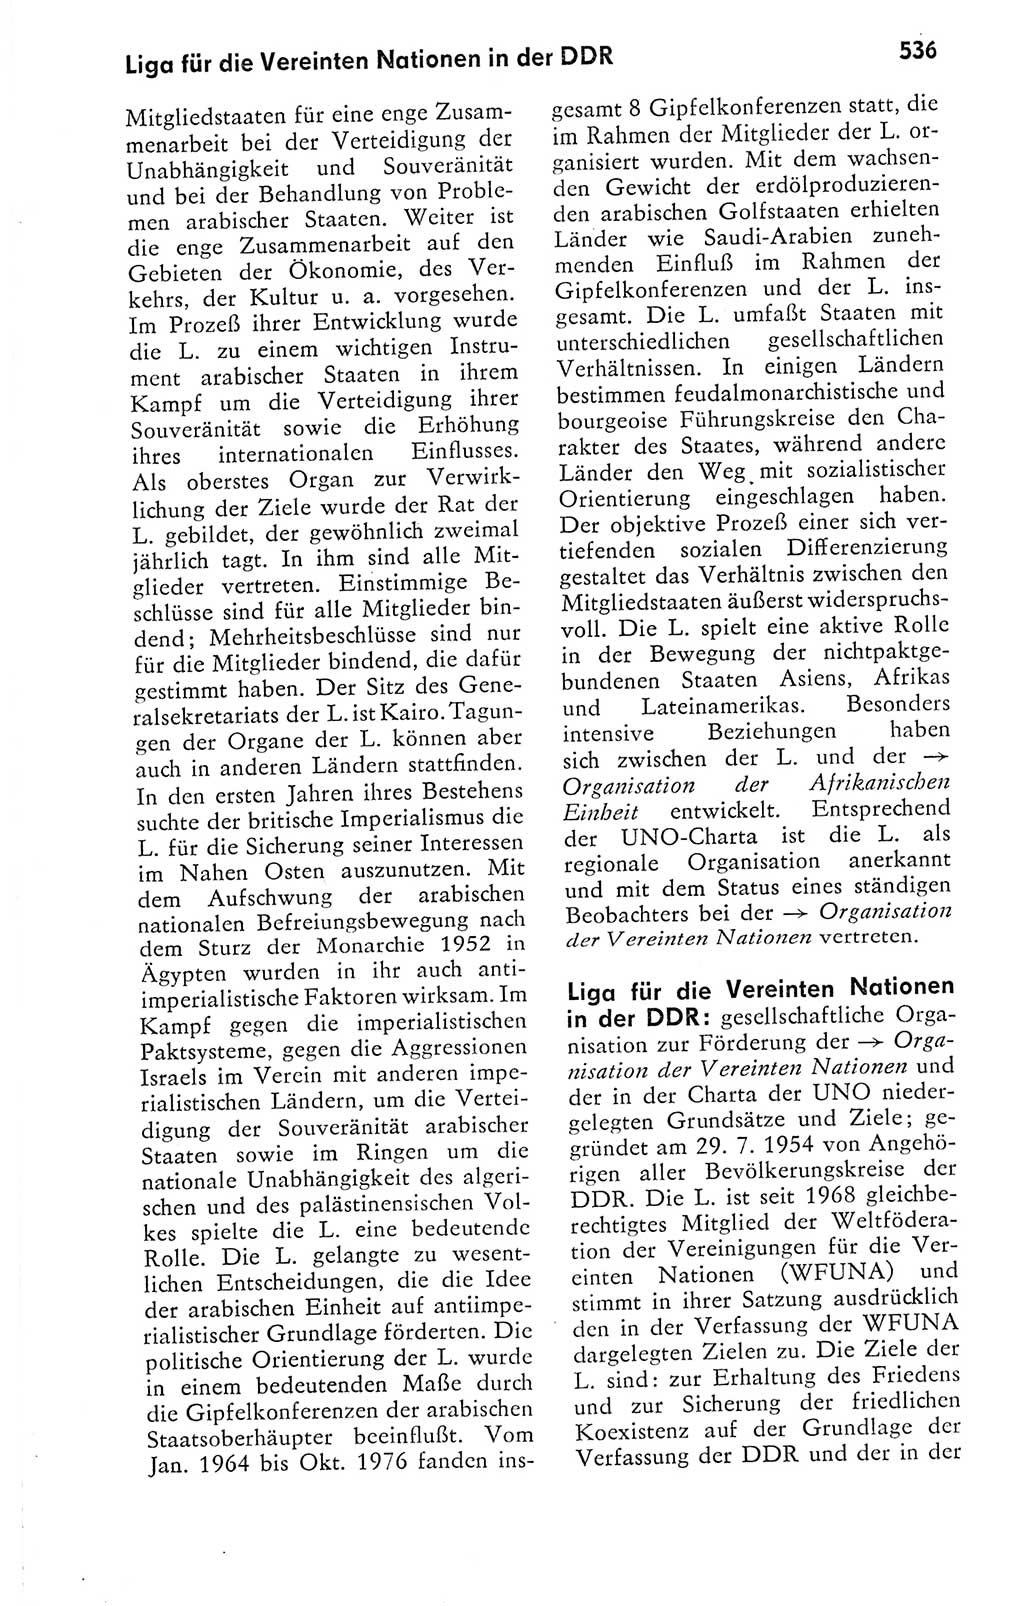 Kleines politisches Wörterbuch [Deutsche Demokratische Republik (DDR)] 1978, Seite 536 (Kl. pol. Wb. DDR 1978, S. 536)